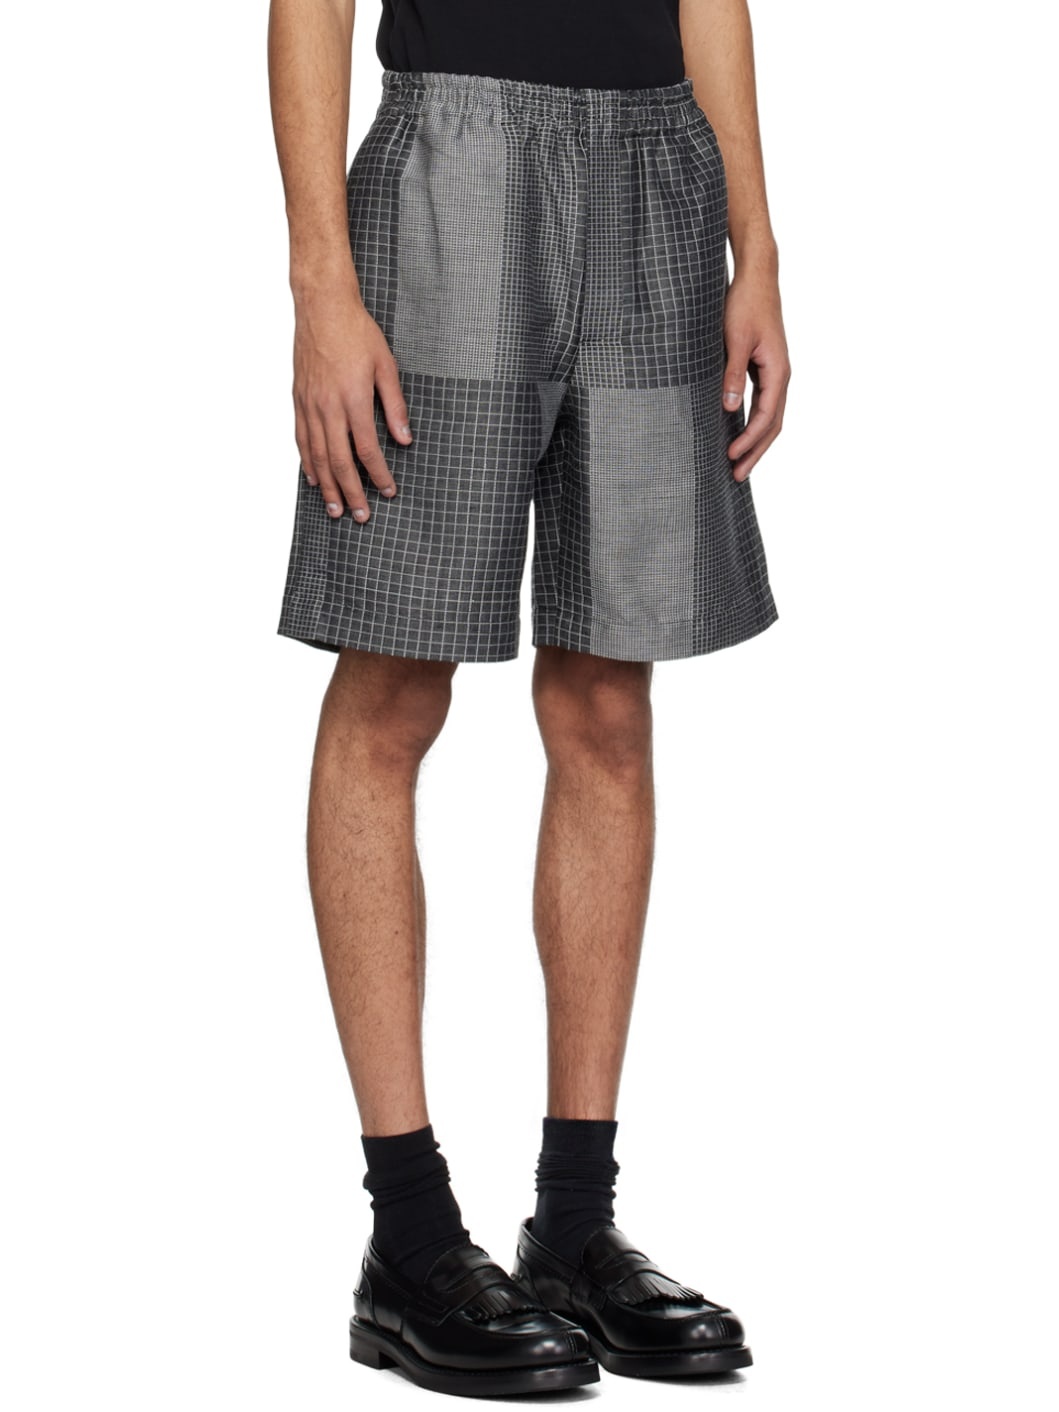 Gray Jacquard Shorts - 2